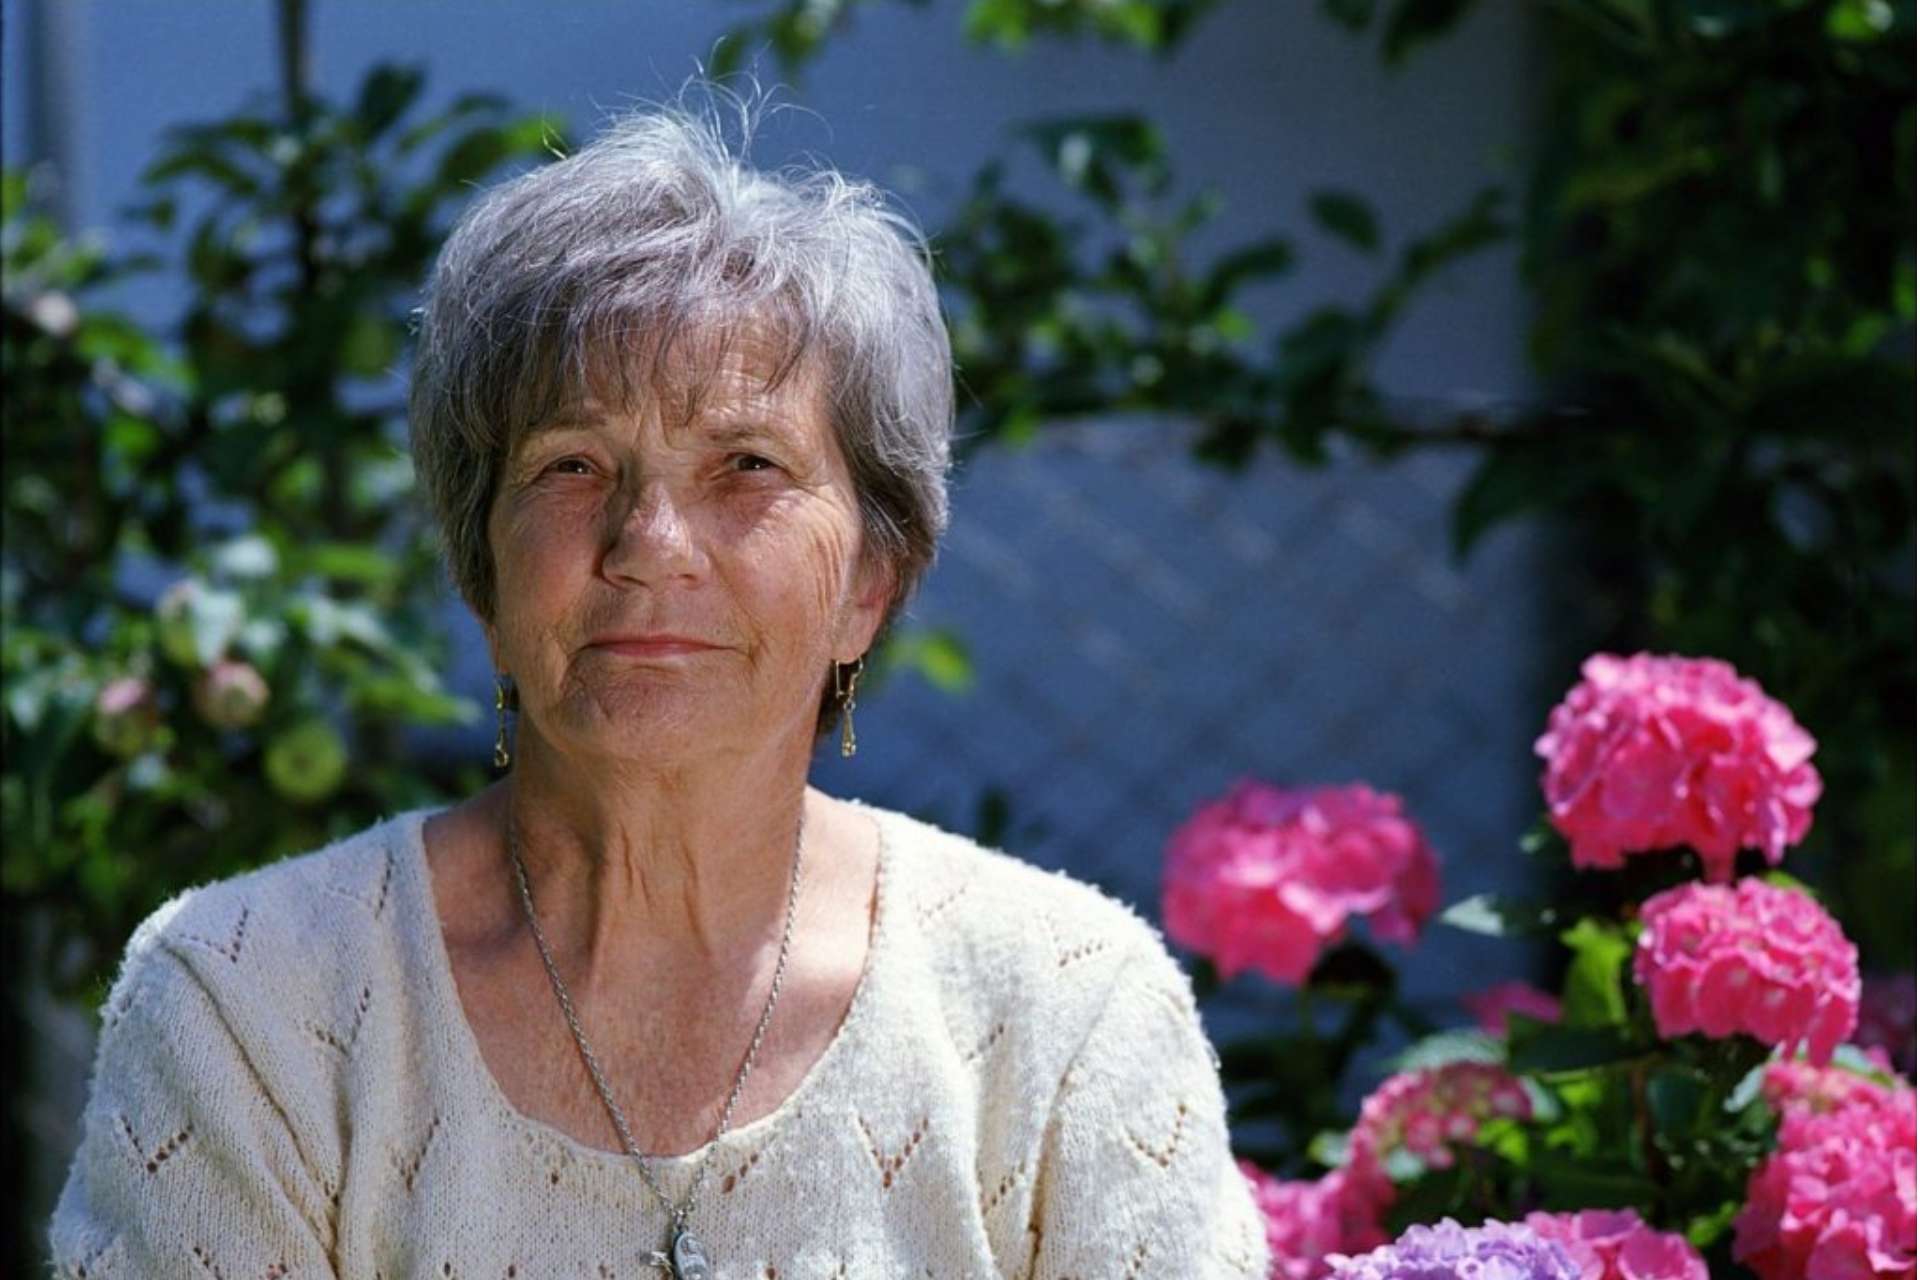 Elderly woman sitting in garden